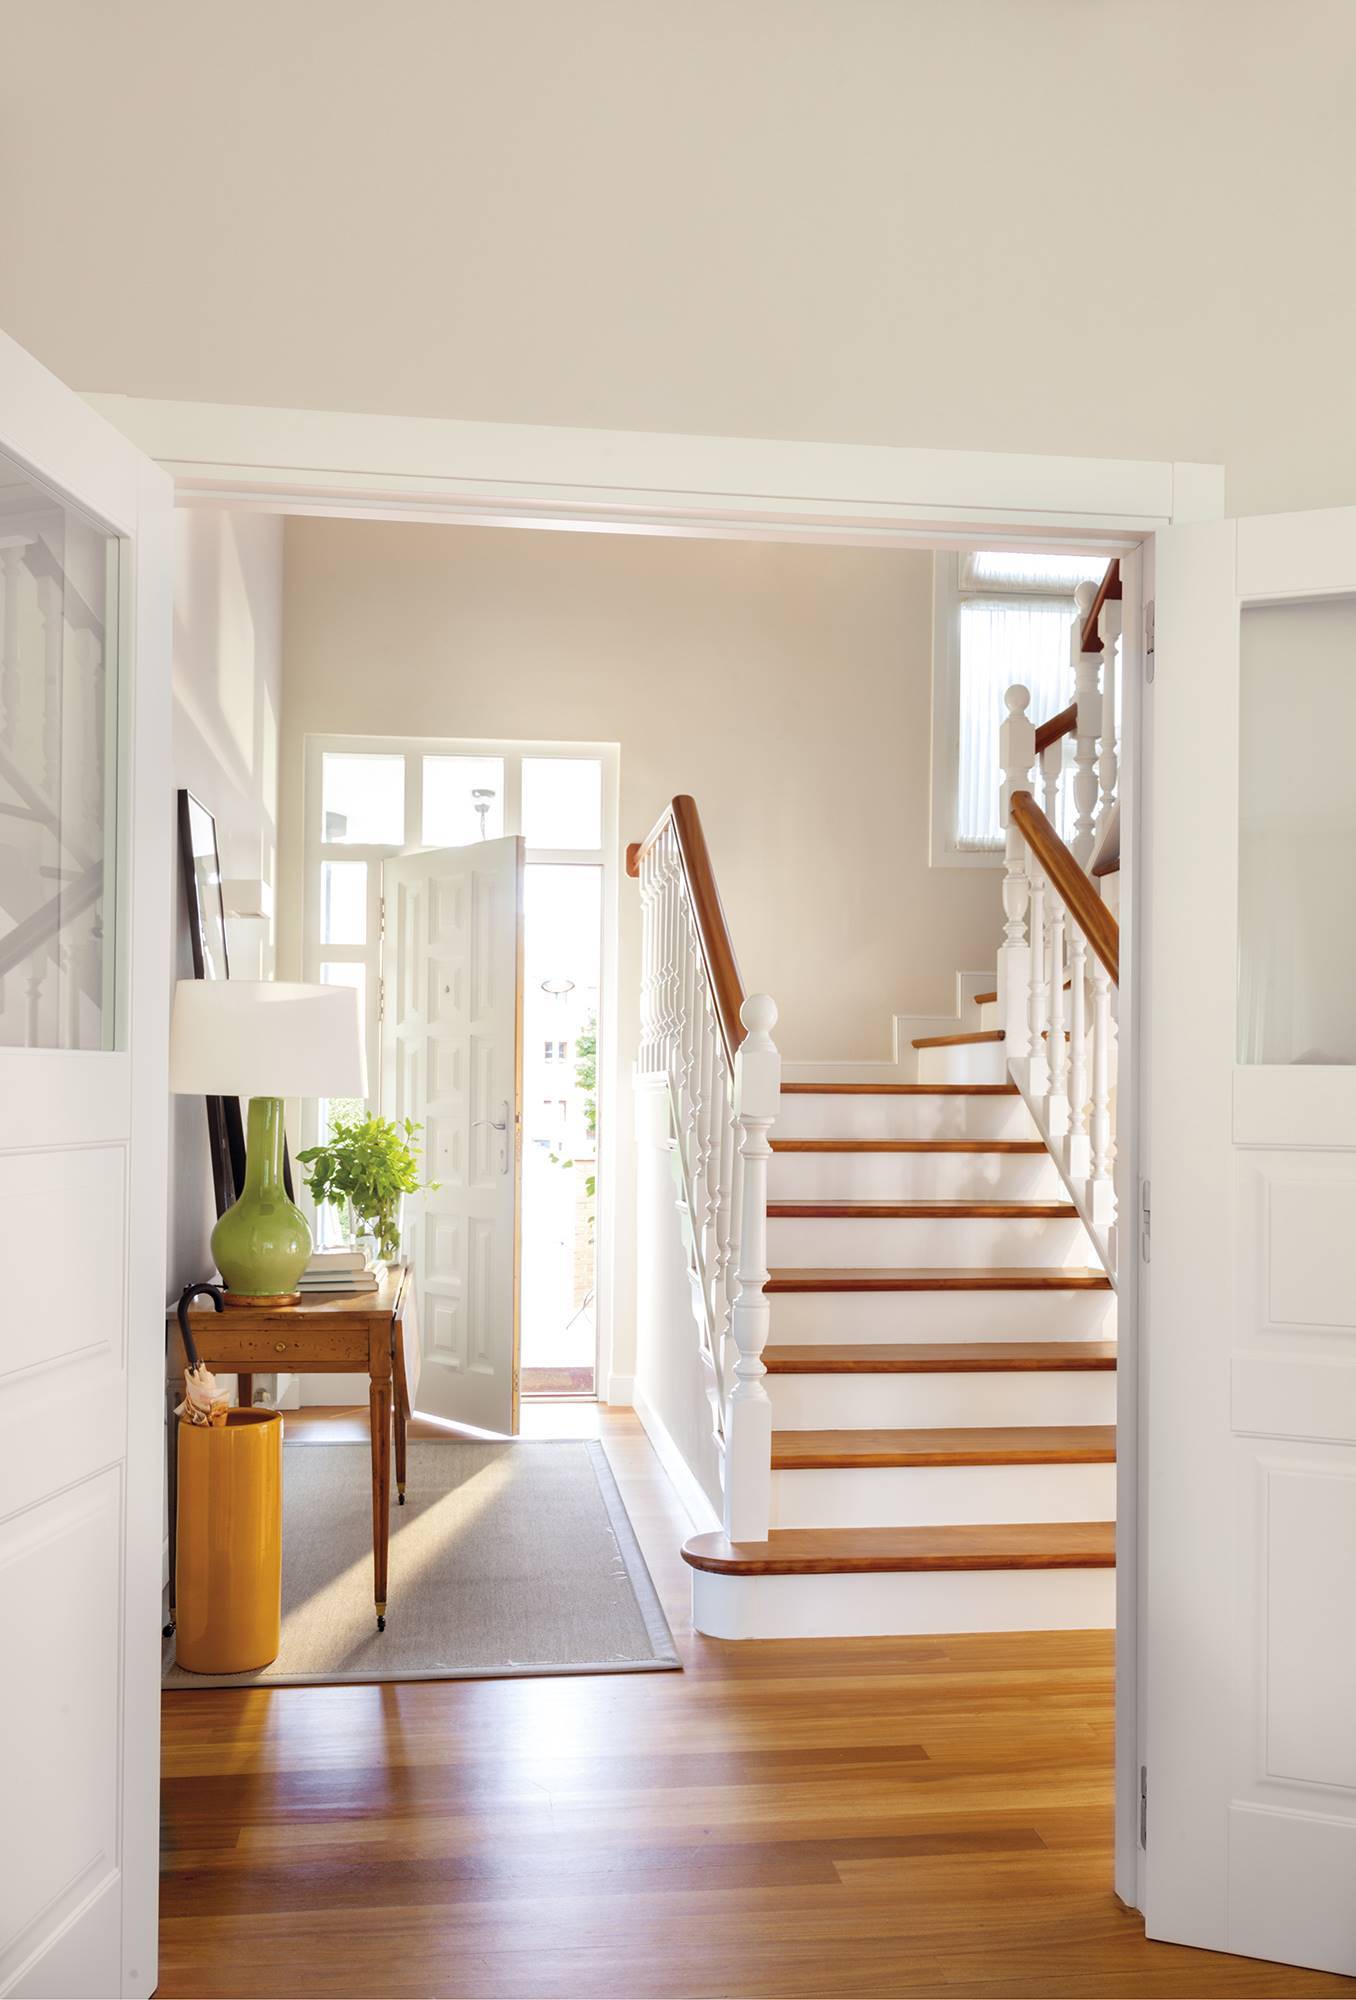 Recibidor luminoso con escalera de madera y barandilla pintada de blanco.